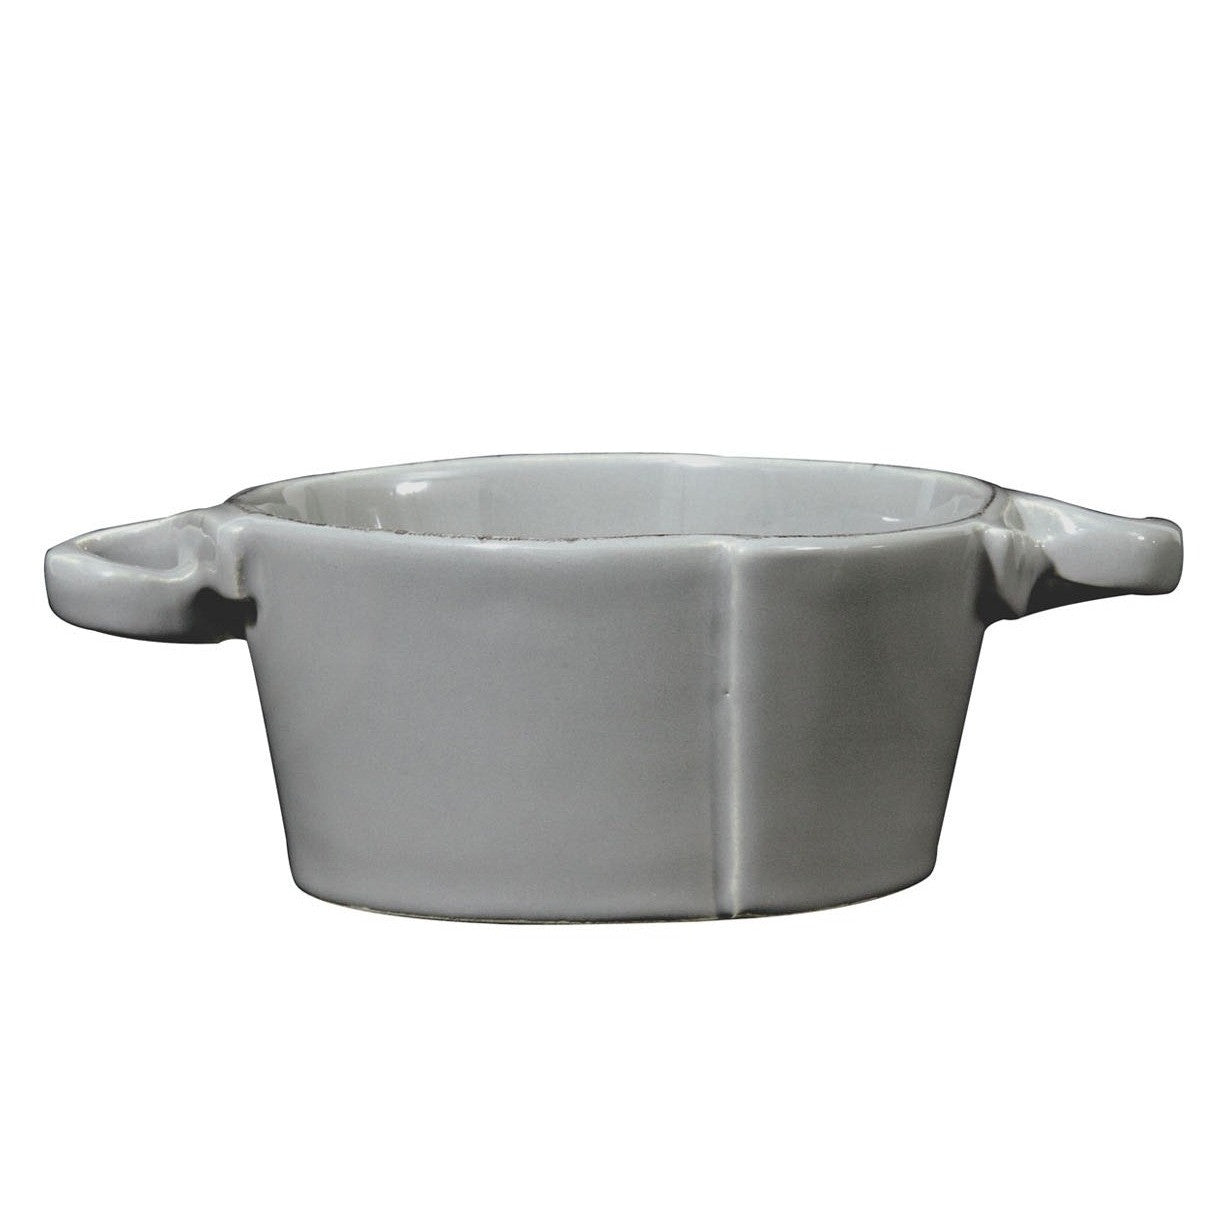 VIETRI: Lastra Gray Small Handled Bowl - Artistica.com